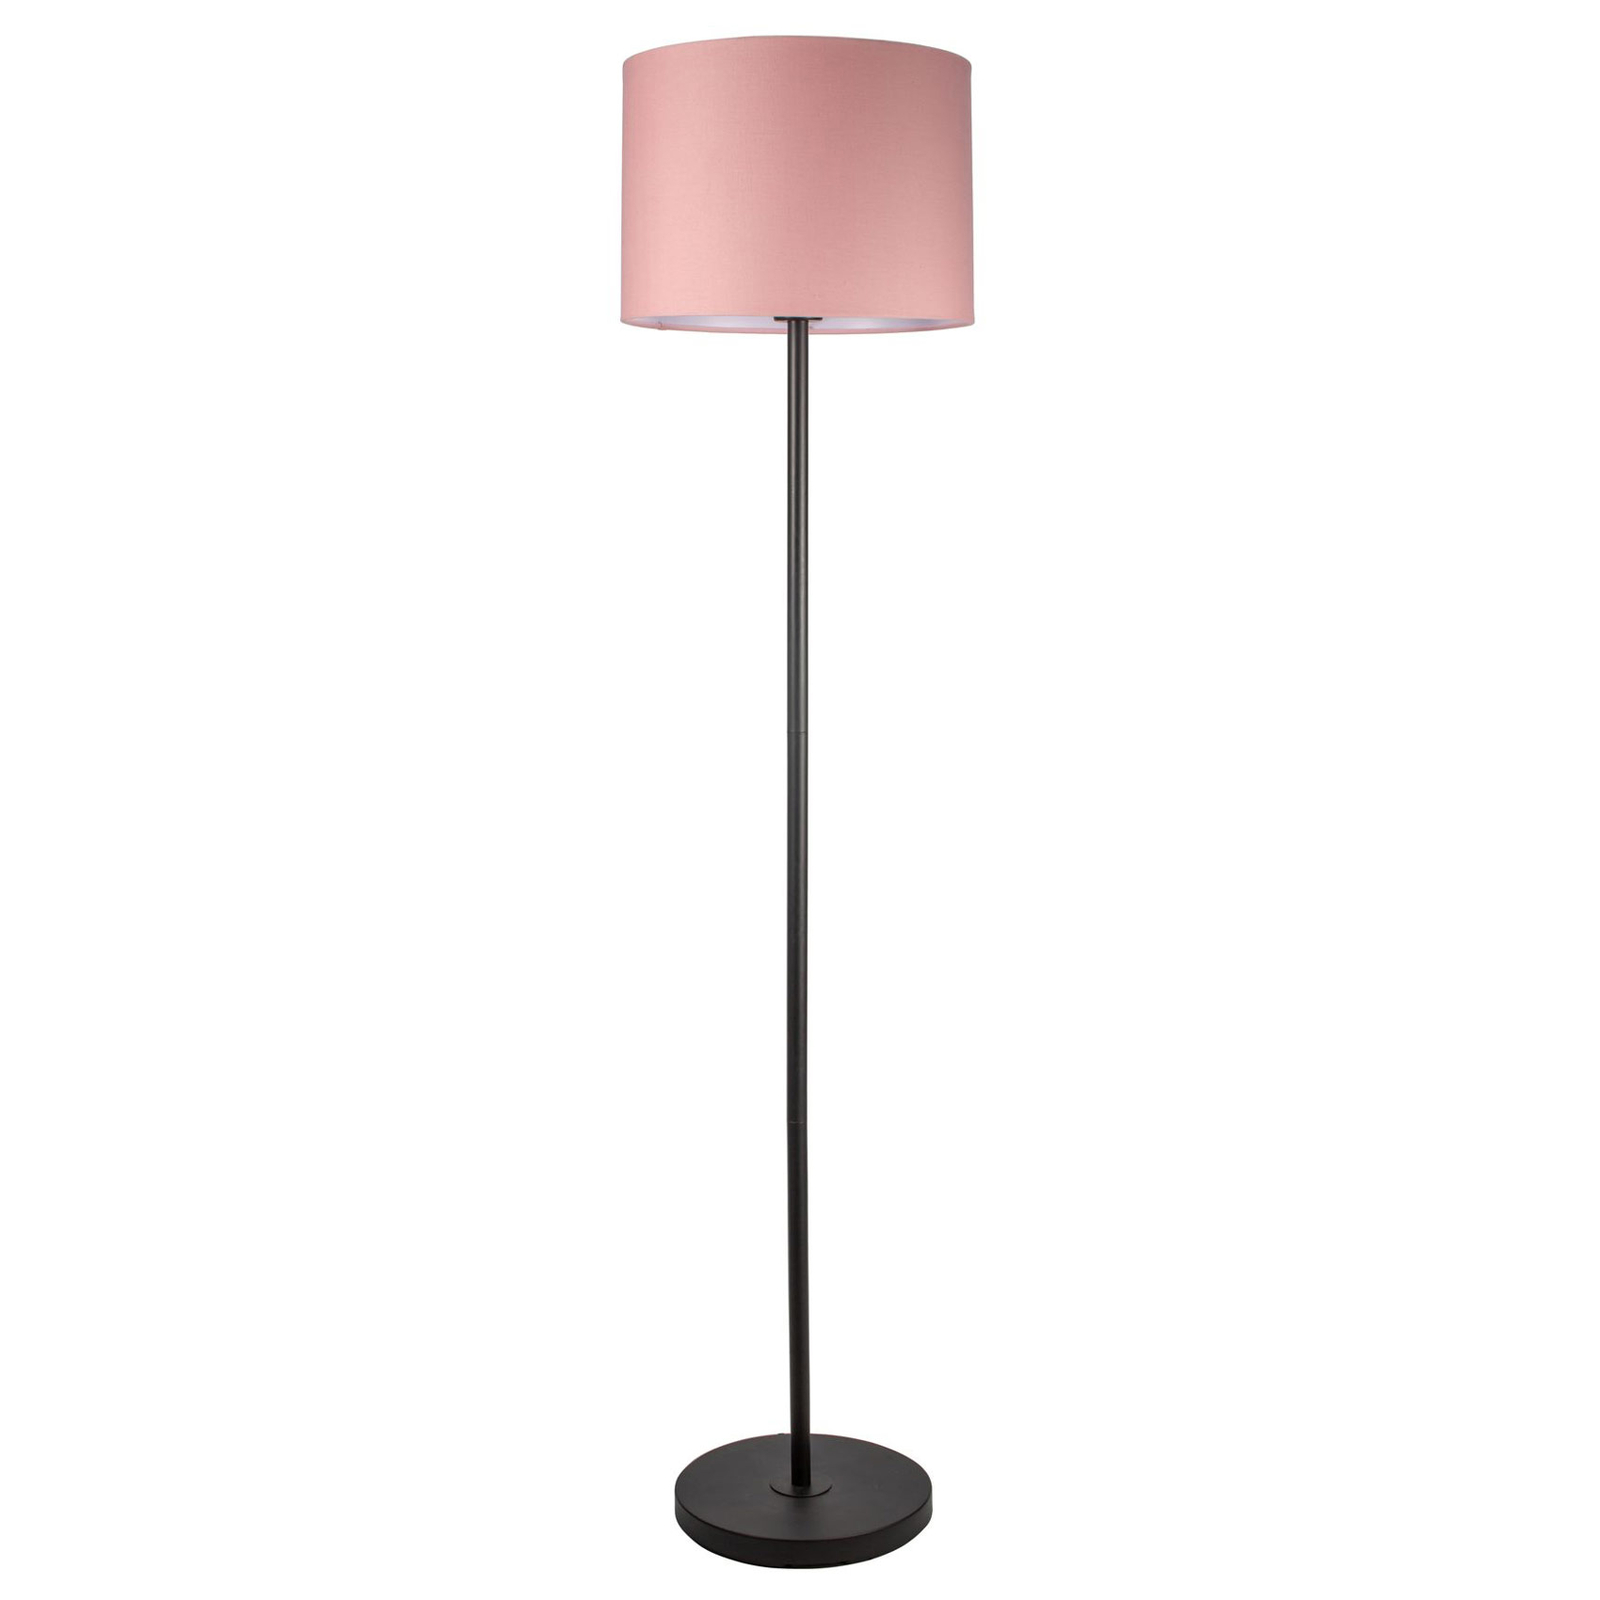 Pauleen Grand Reverie vloerlamp in roze/zwart